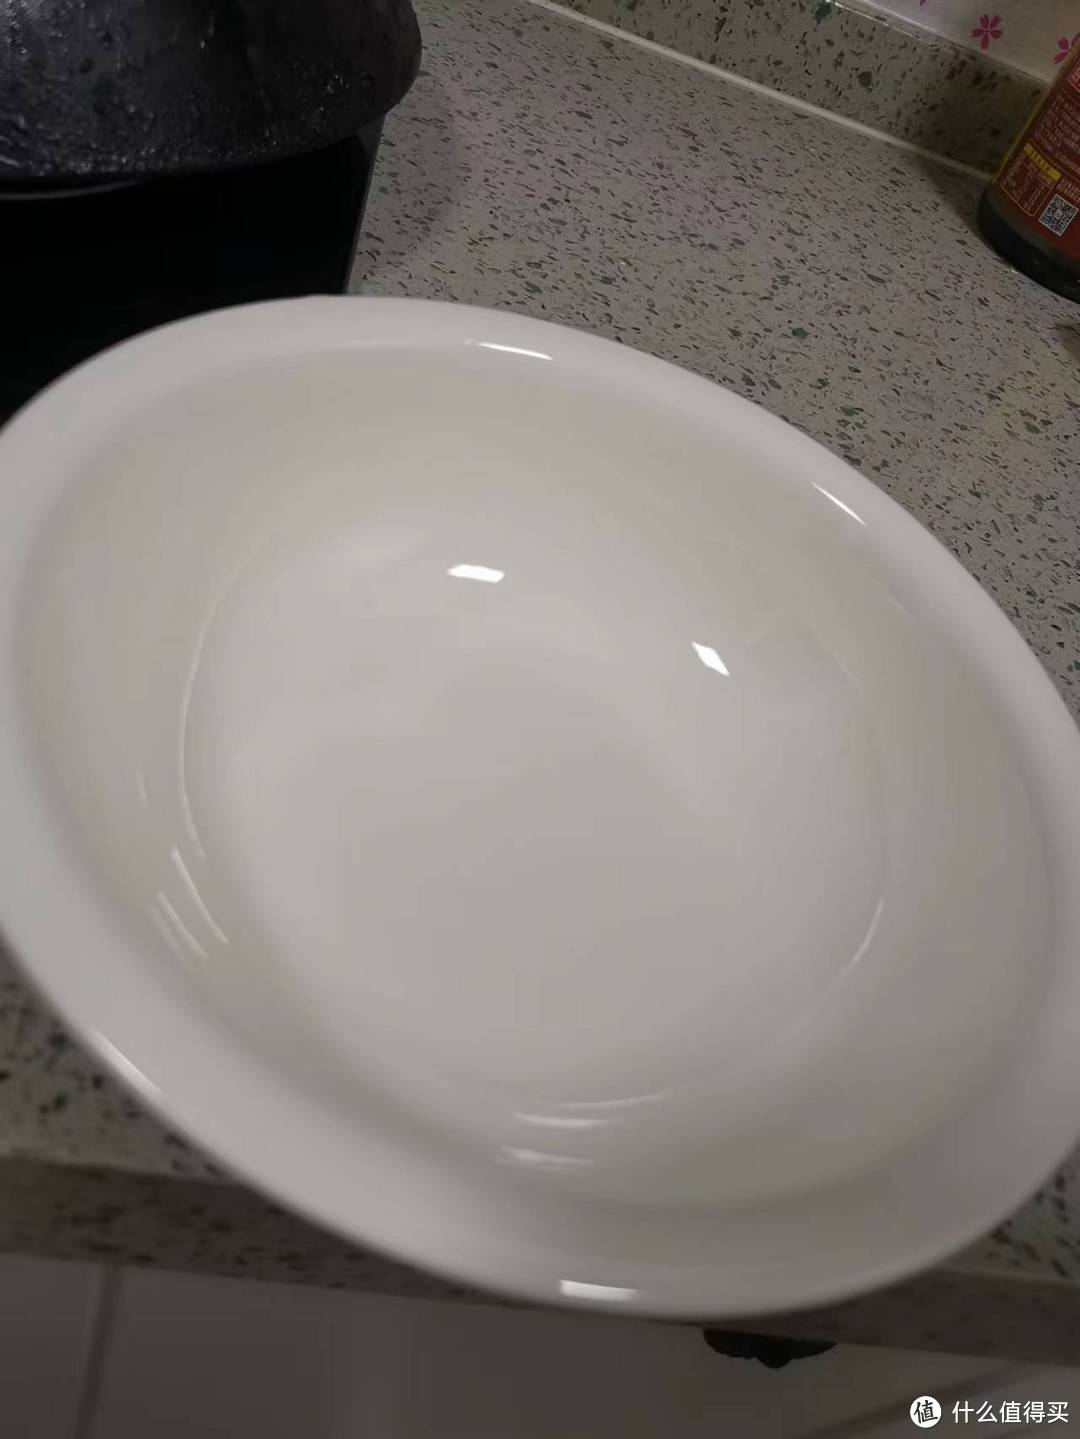 洗了之后的碗